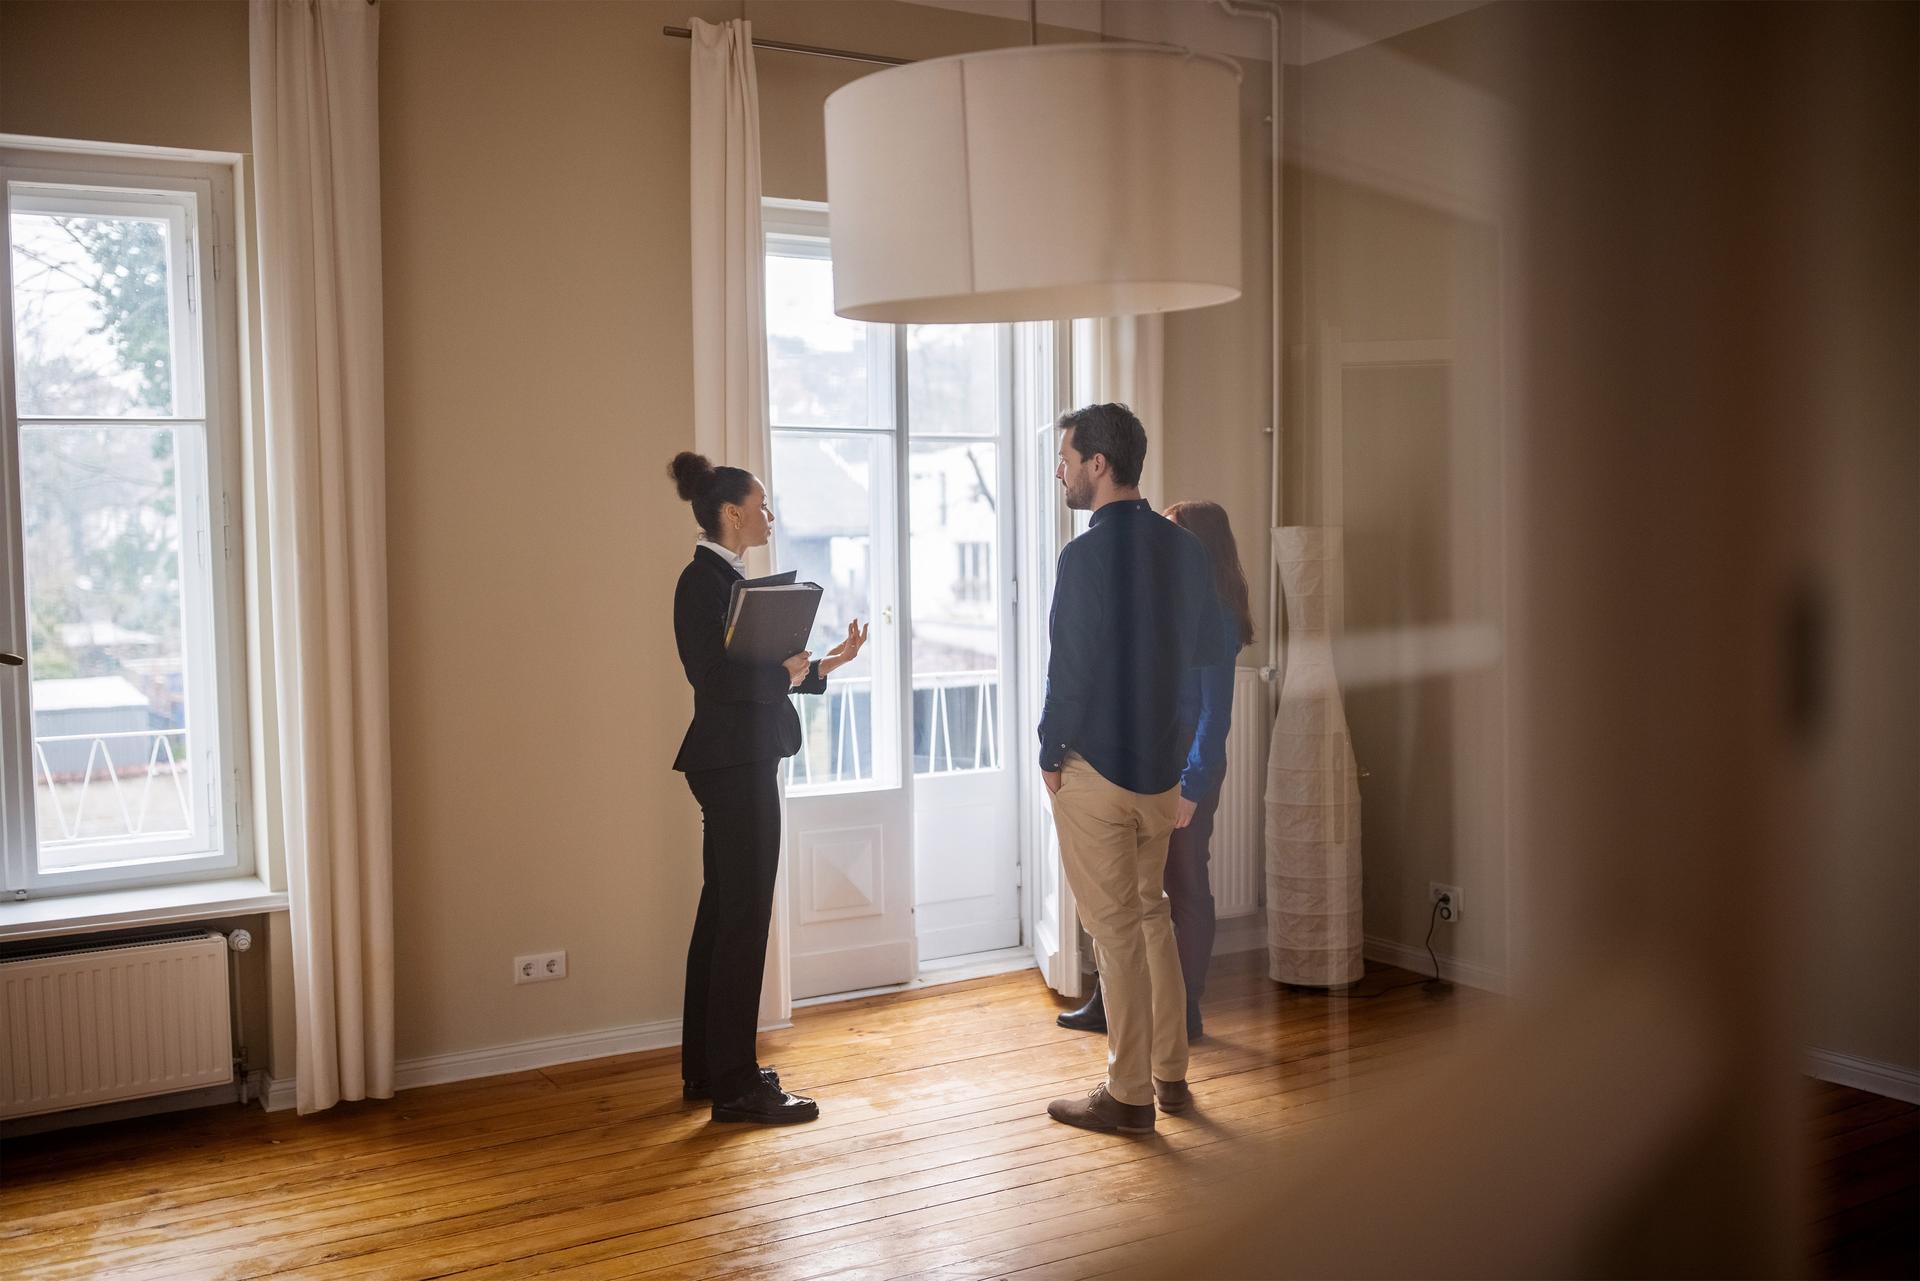 Immobilienmaklerin steht mit einem jungen Paar in einem leeren Zimmer. Sie trägt einen Hosenanzug und hat eine Mappe in der Hand.